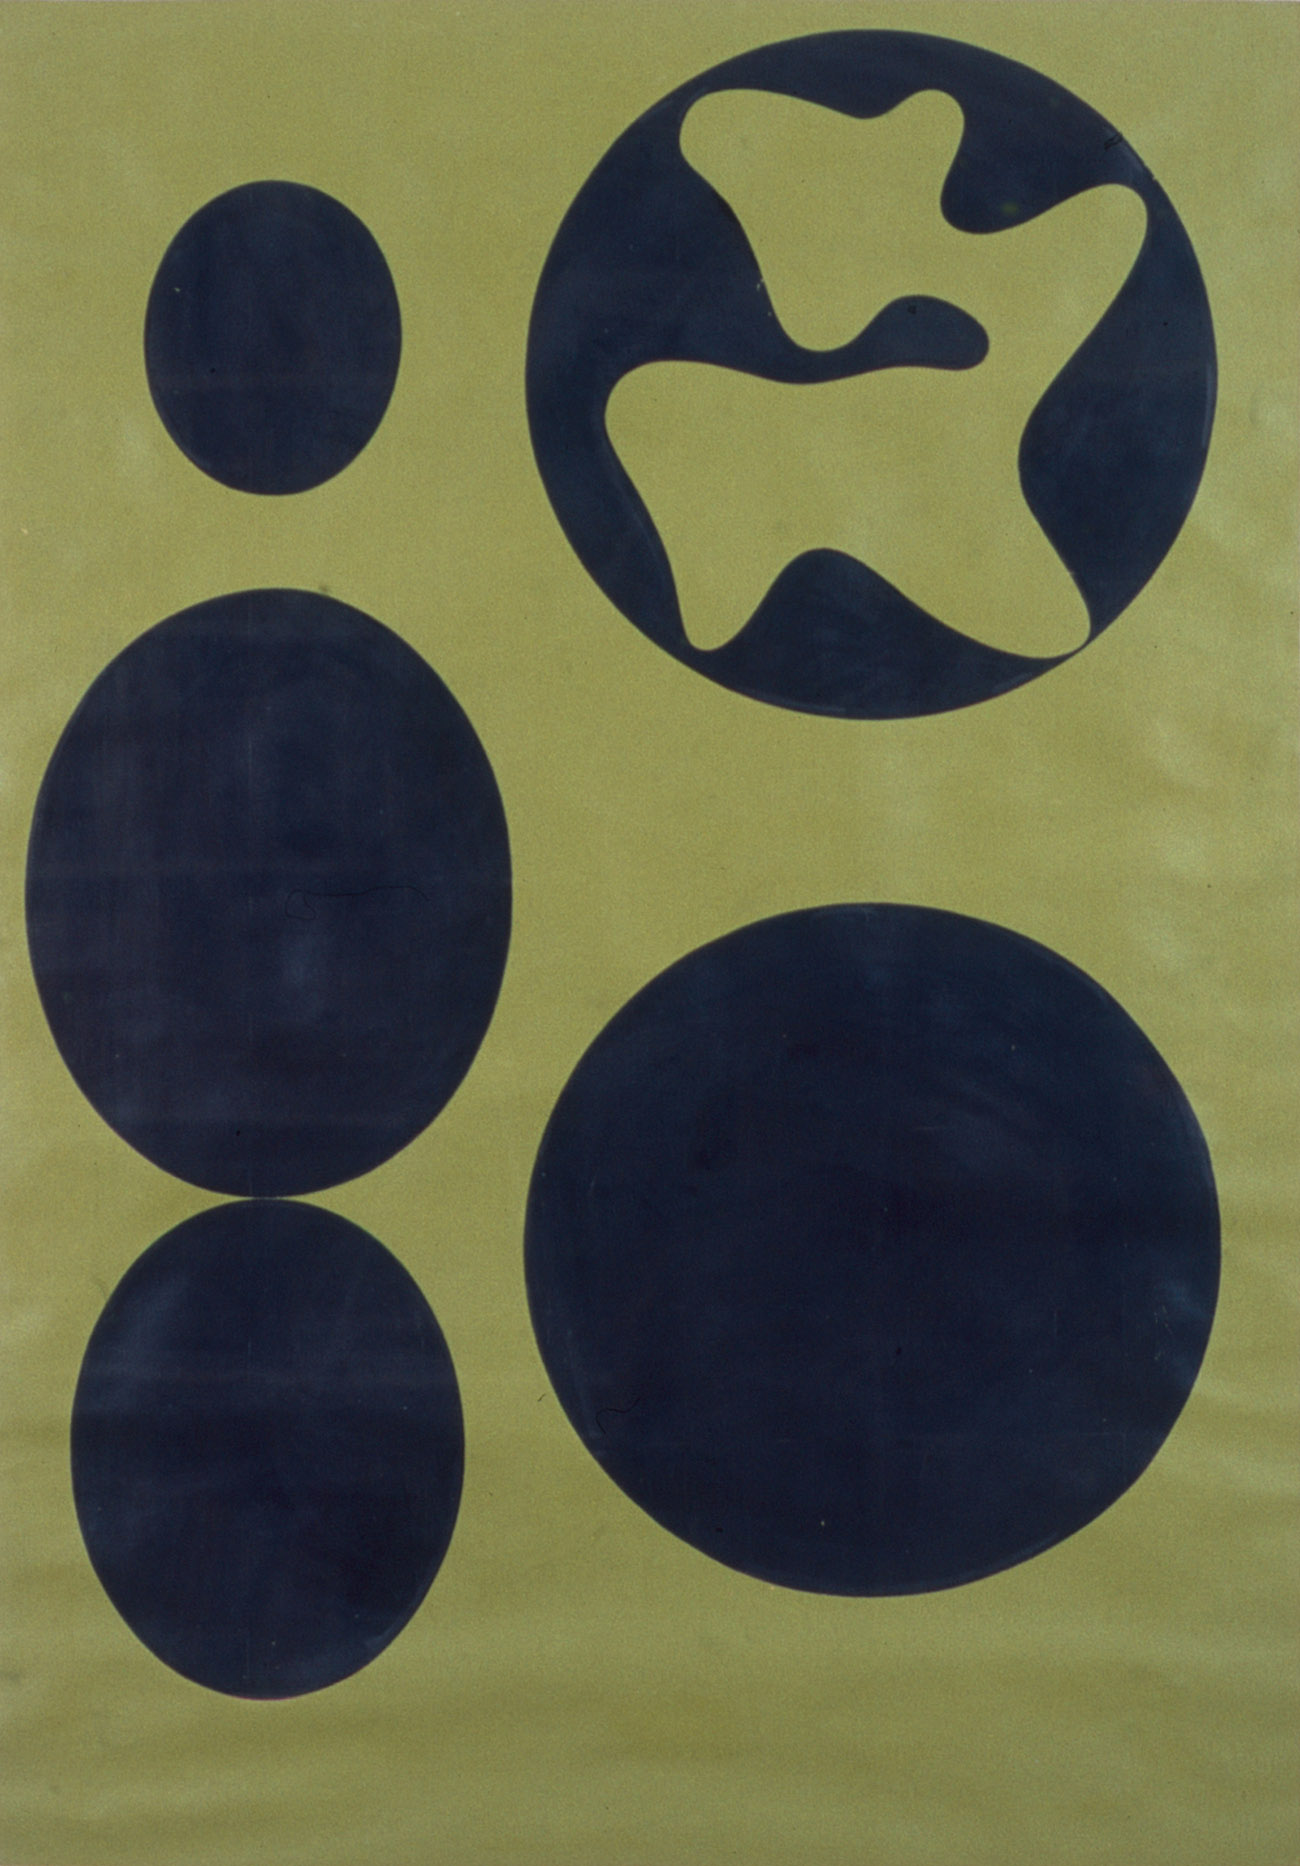 Hans Arp, Constellation “Ronco dei Fiori”, 1961, Öl auf Papier, 110 x 79 cm. Fondazione Marguerite Arp, Locarno. Foto: Atelier ACR, Granges-Paccot